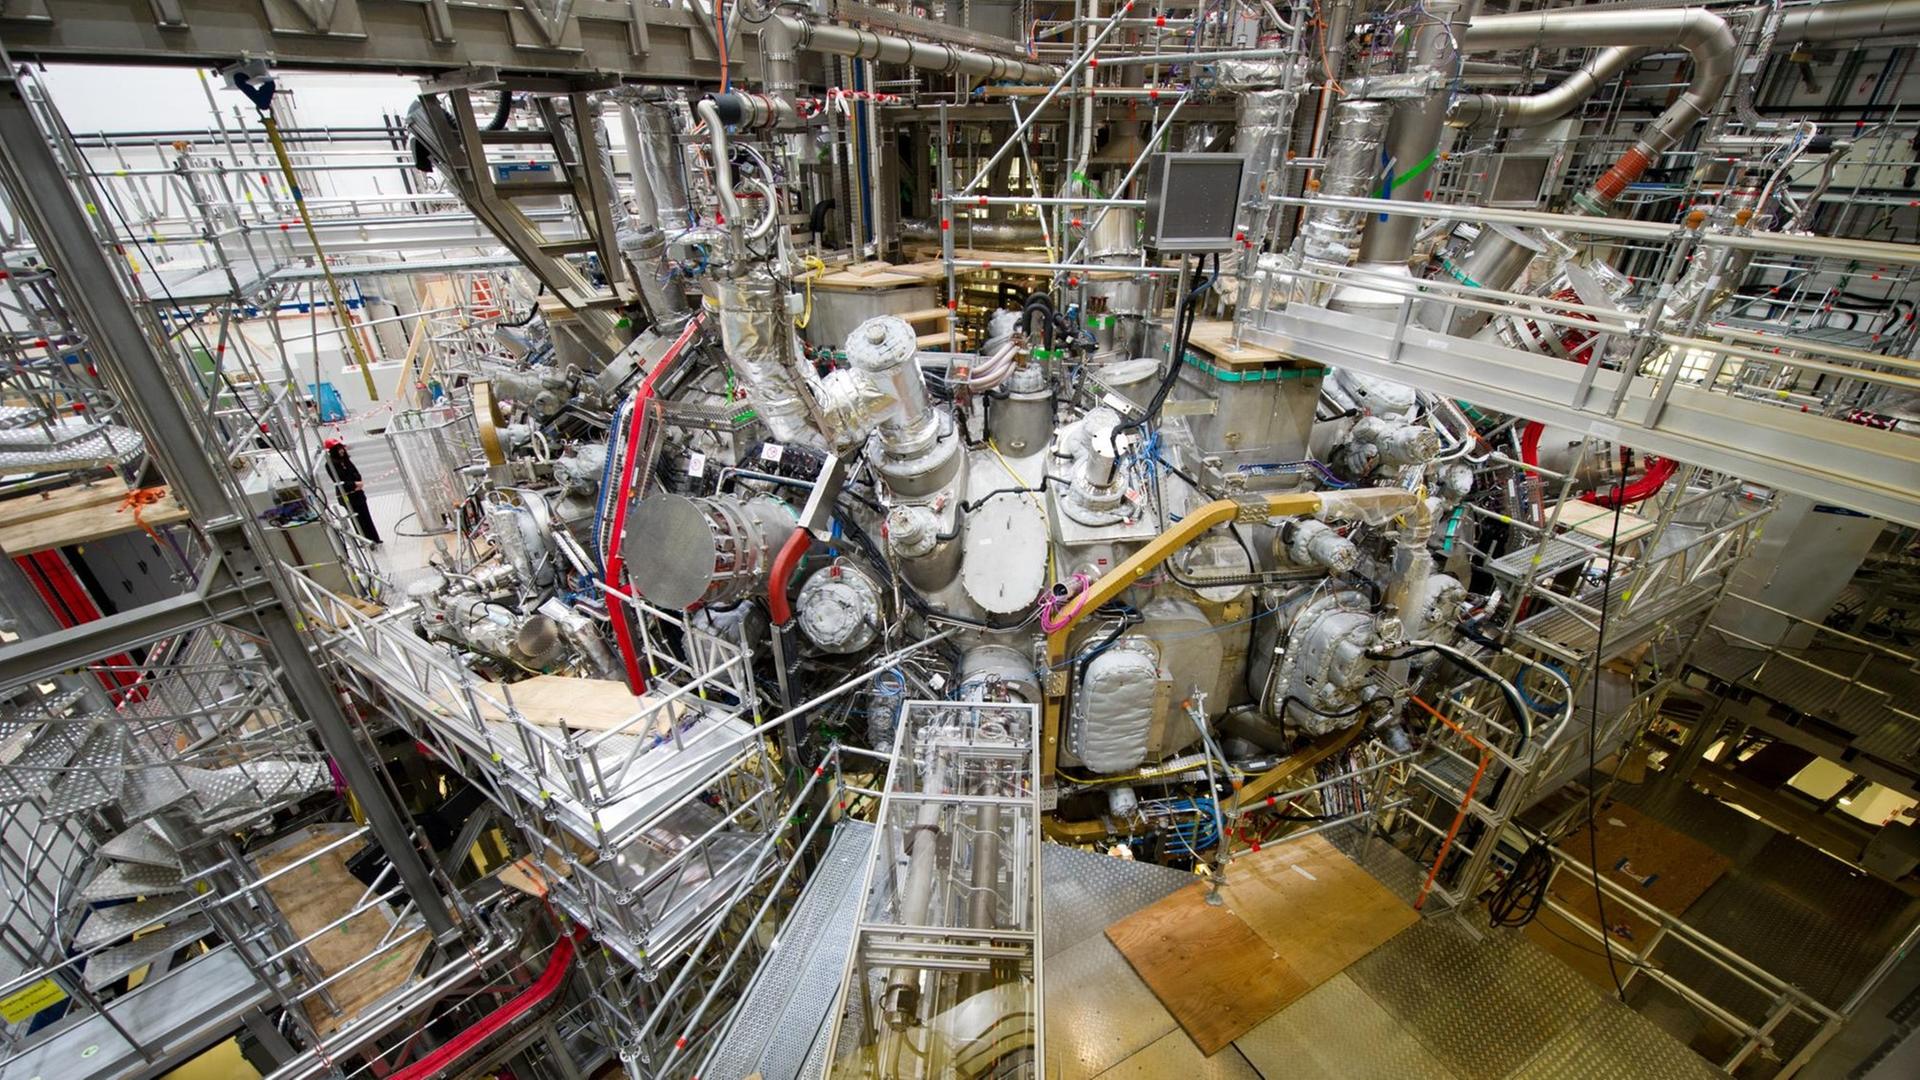 In der Kernfusionsforschungsanlage "Wendelstein 7-X" in Greifswald (Mecklenburg-Vorpommern) ist am 10.12.2015 das erste Plasma erzeugt worden. Das Bild zeigt ein großes Gebilde aus Metall in einer Halle.